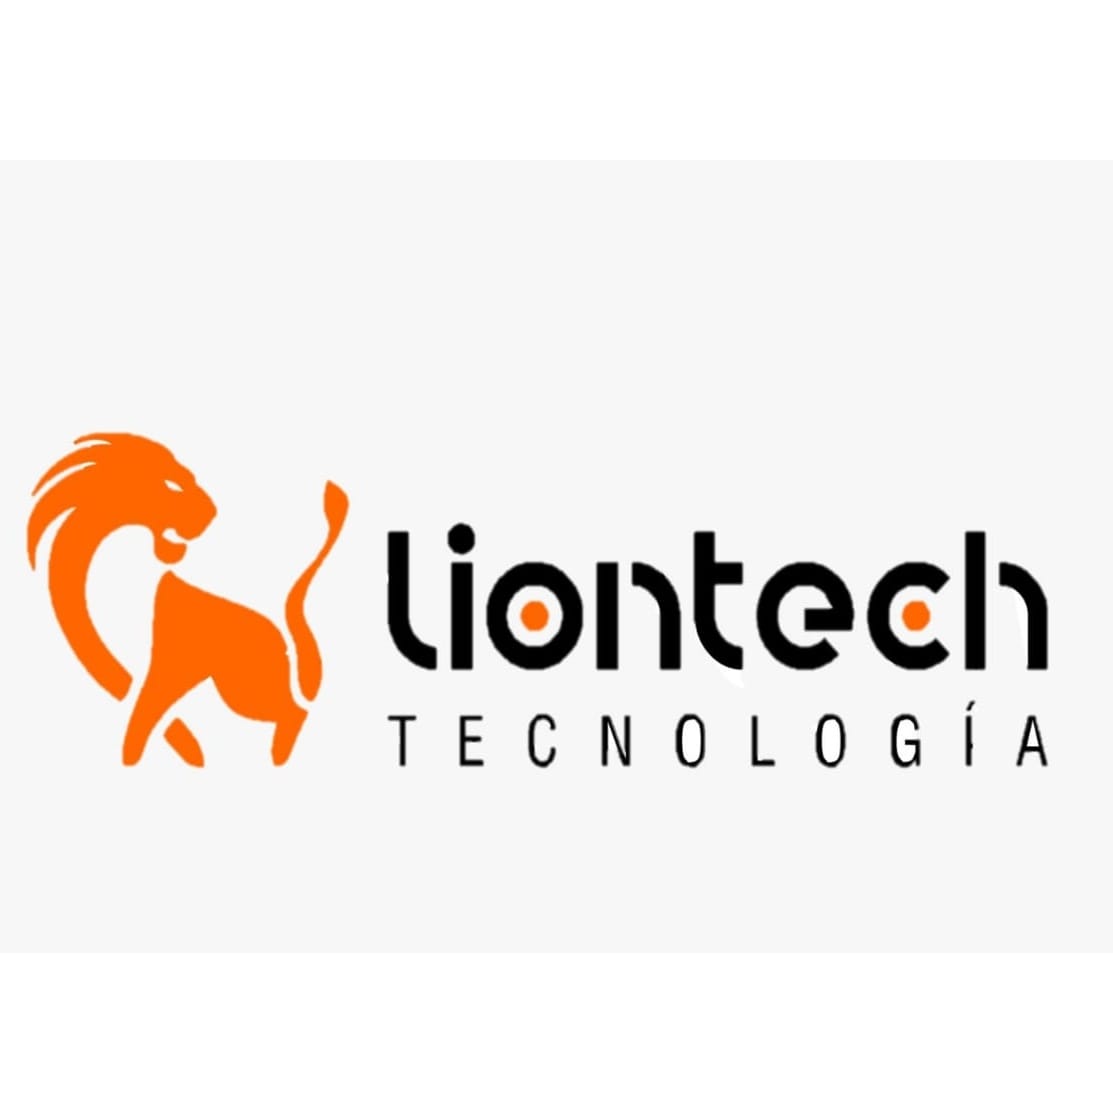 Liontech